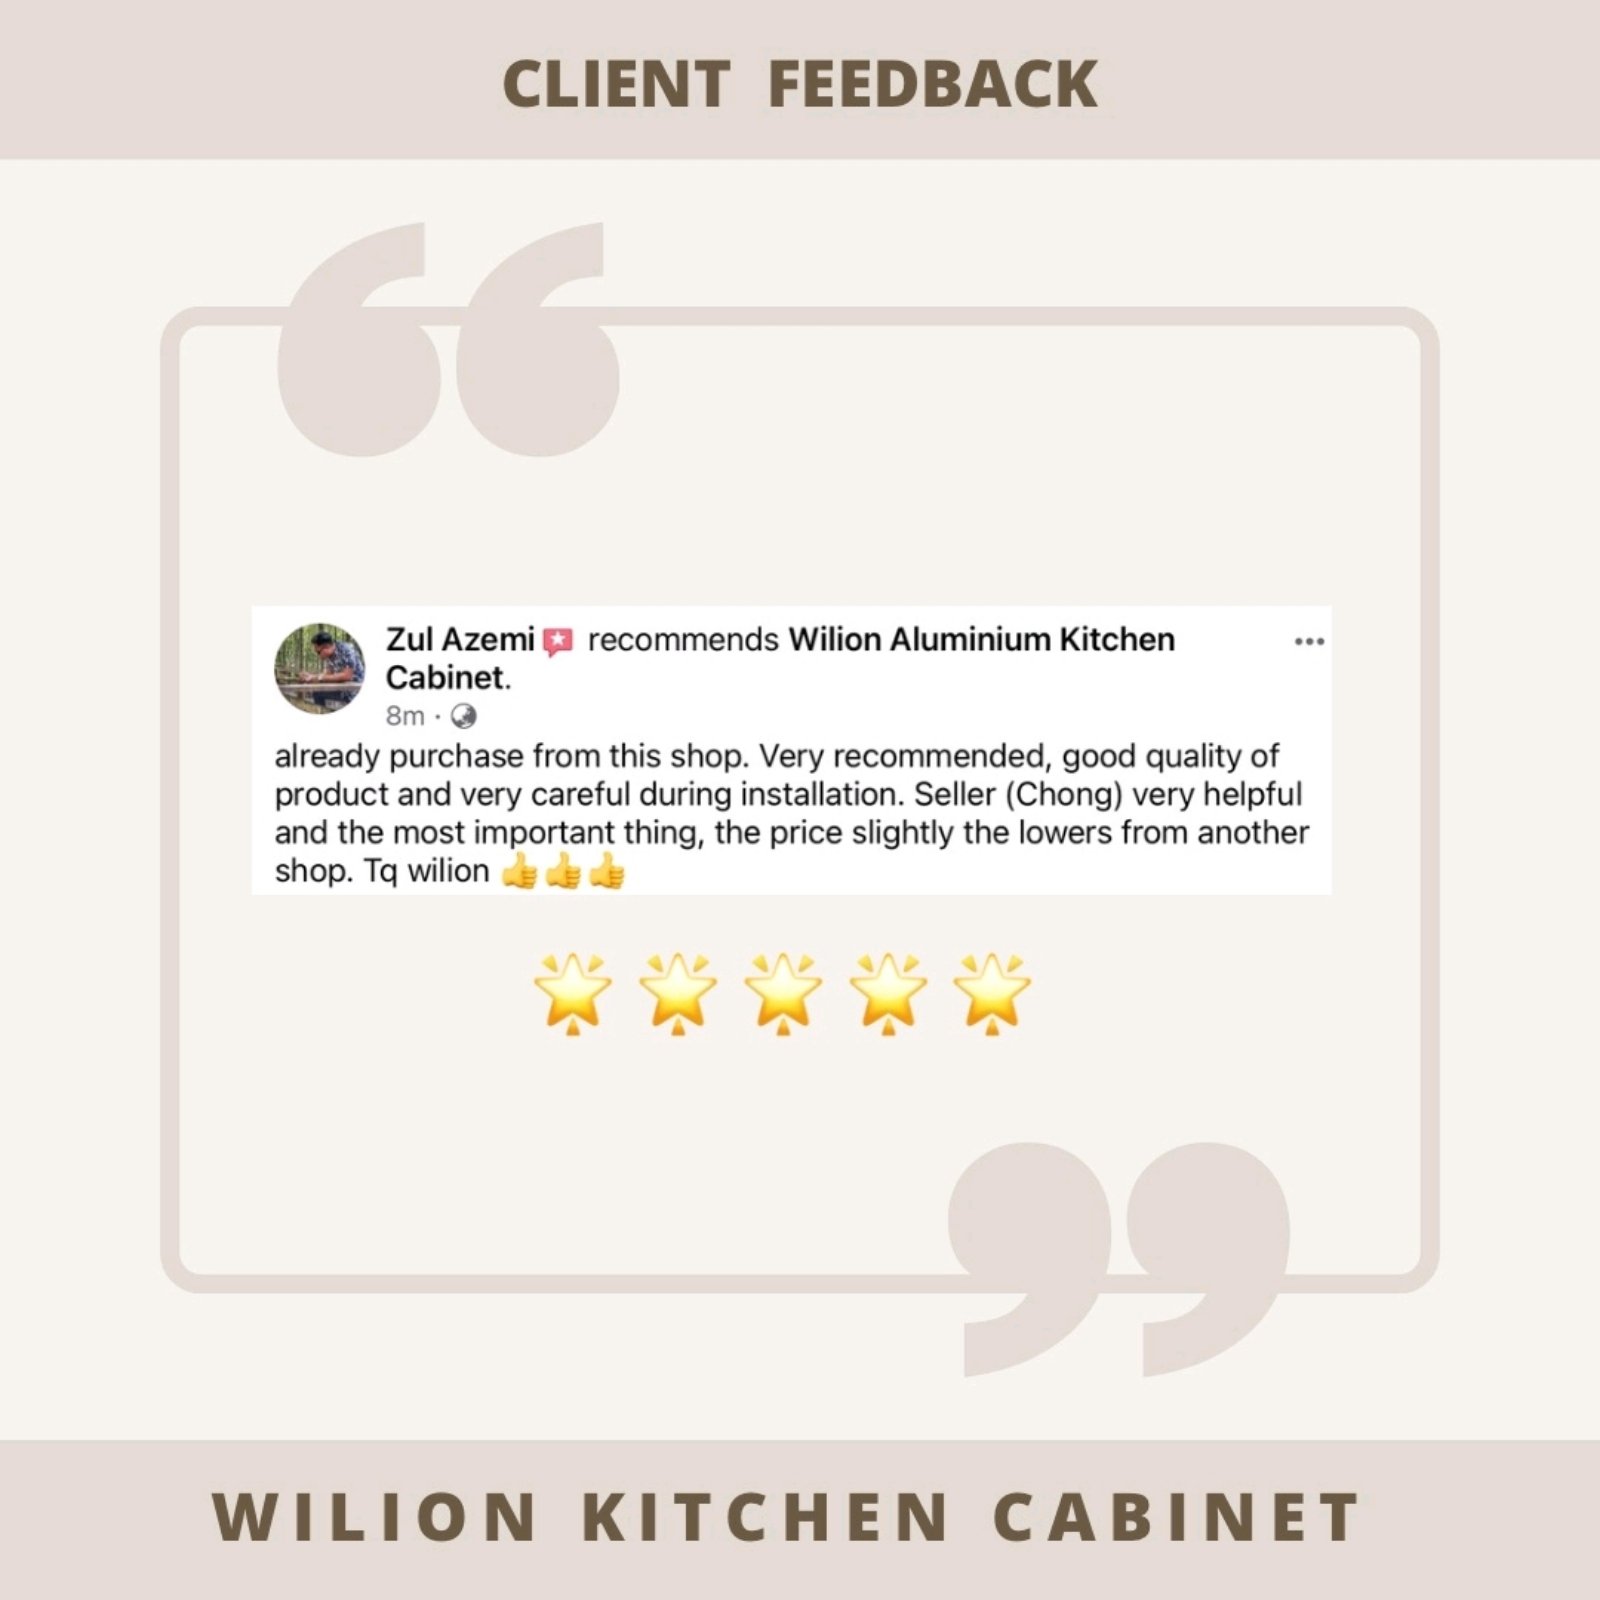 Client Feedback  & WILION KITCHEN CABINET